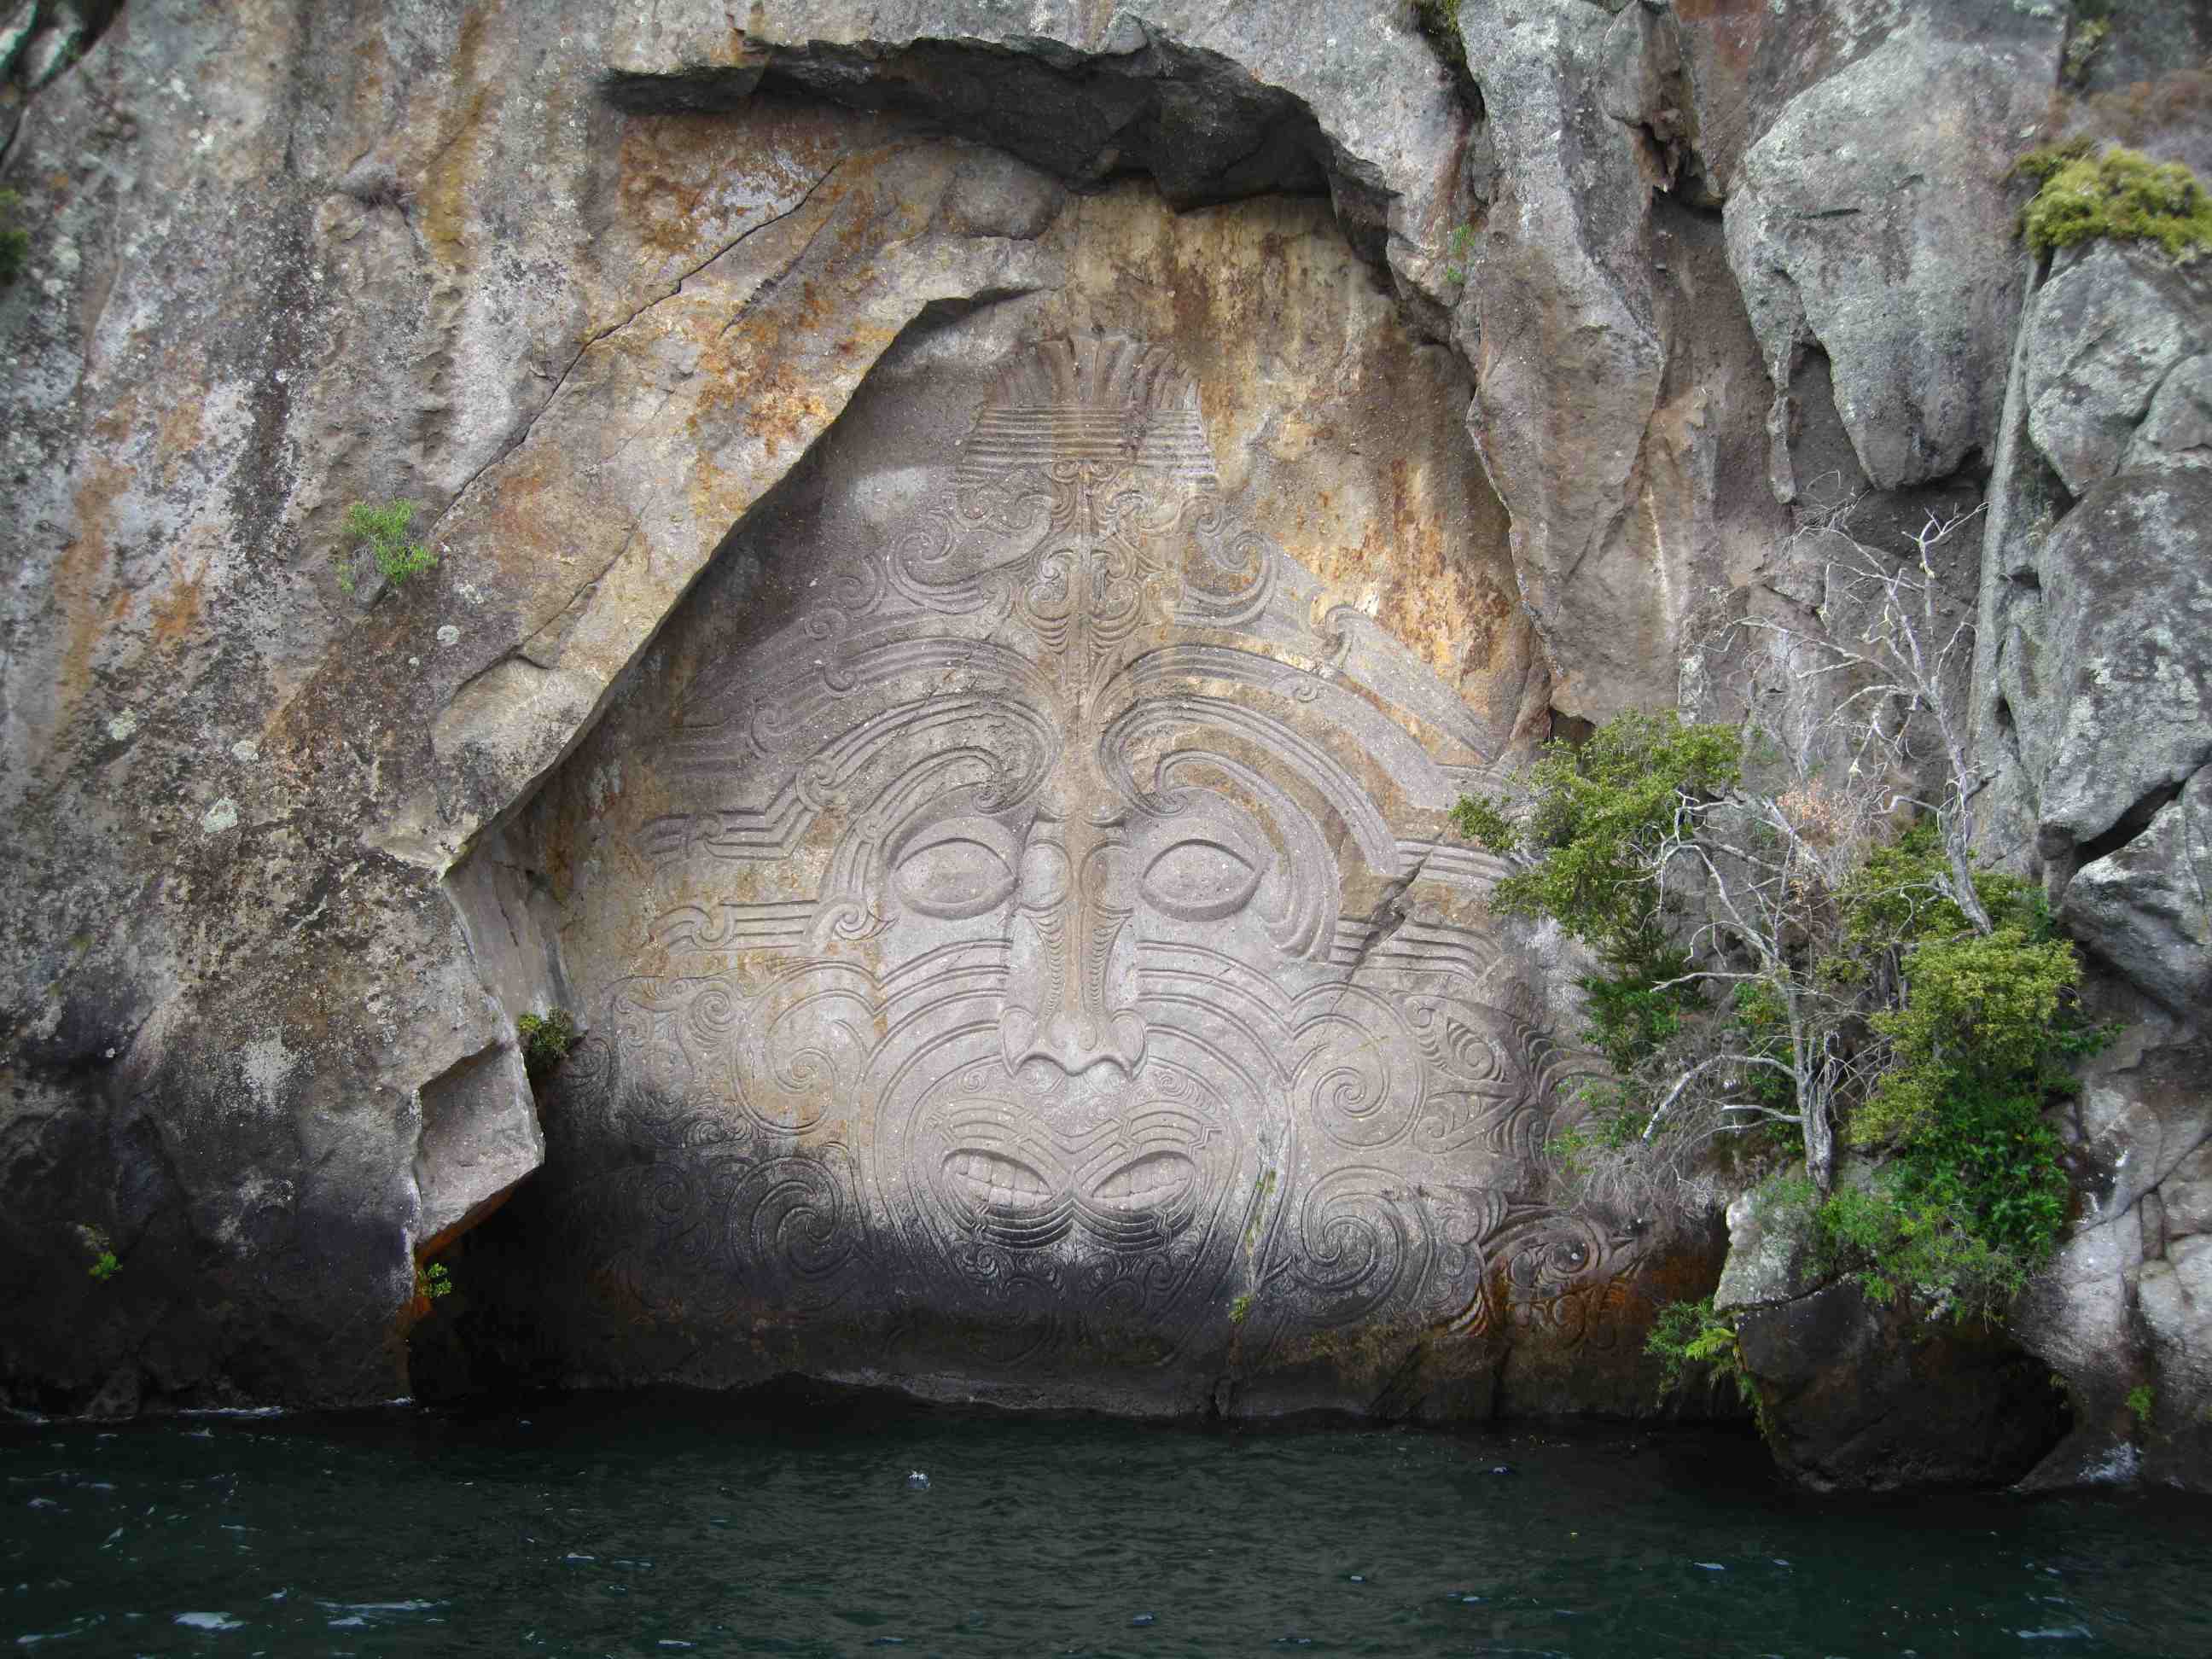 Wall Carving at Taupo